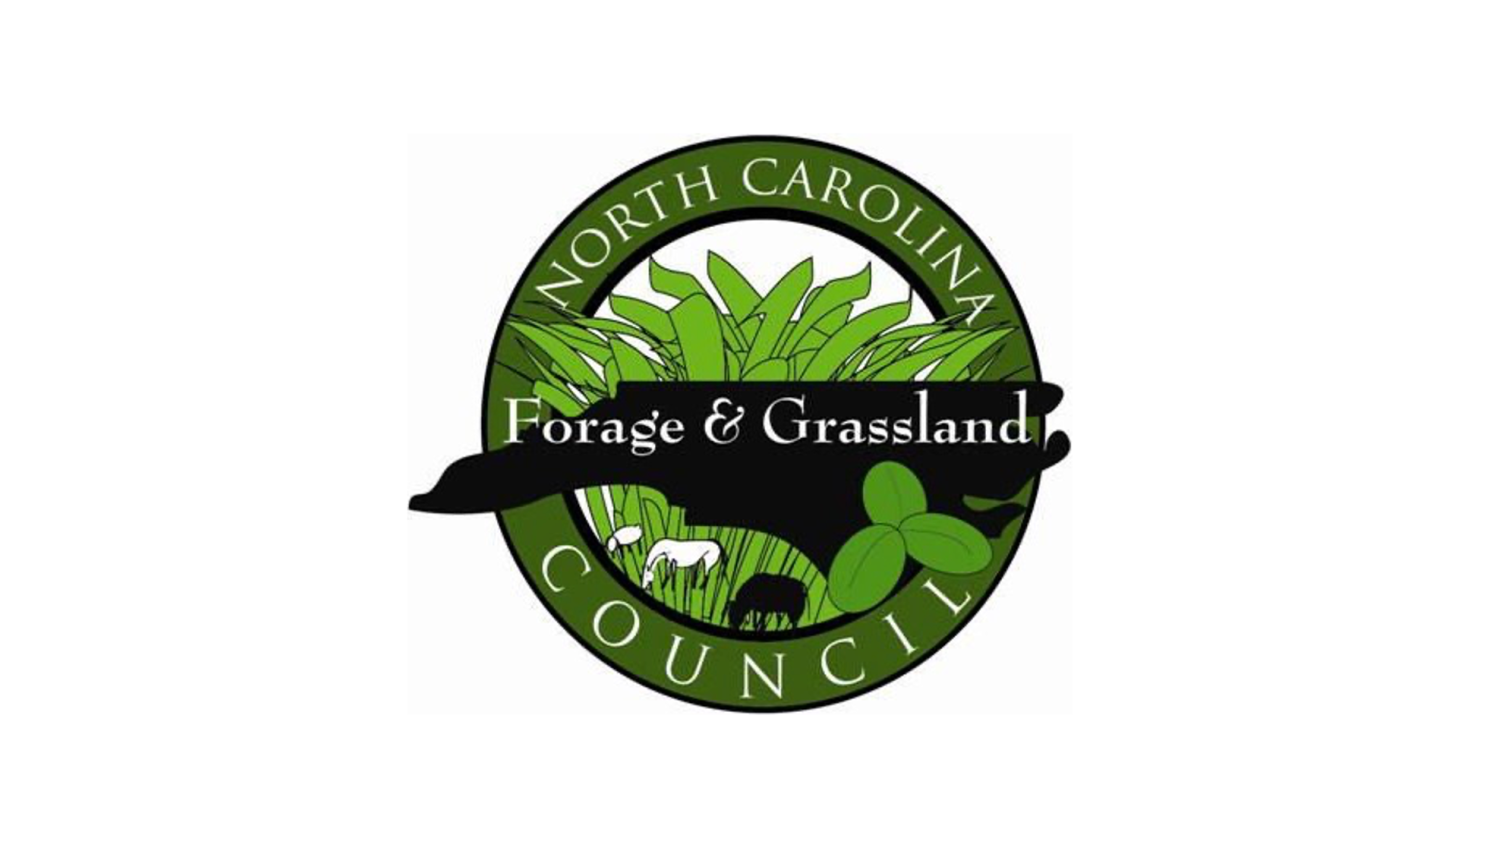 NC Grassland & Forage Council